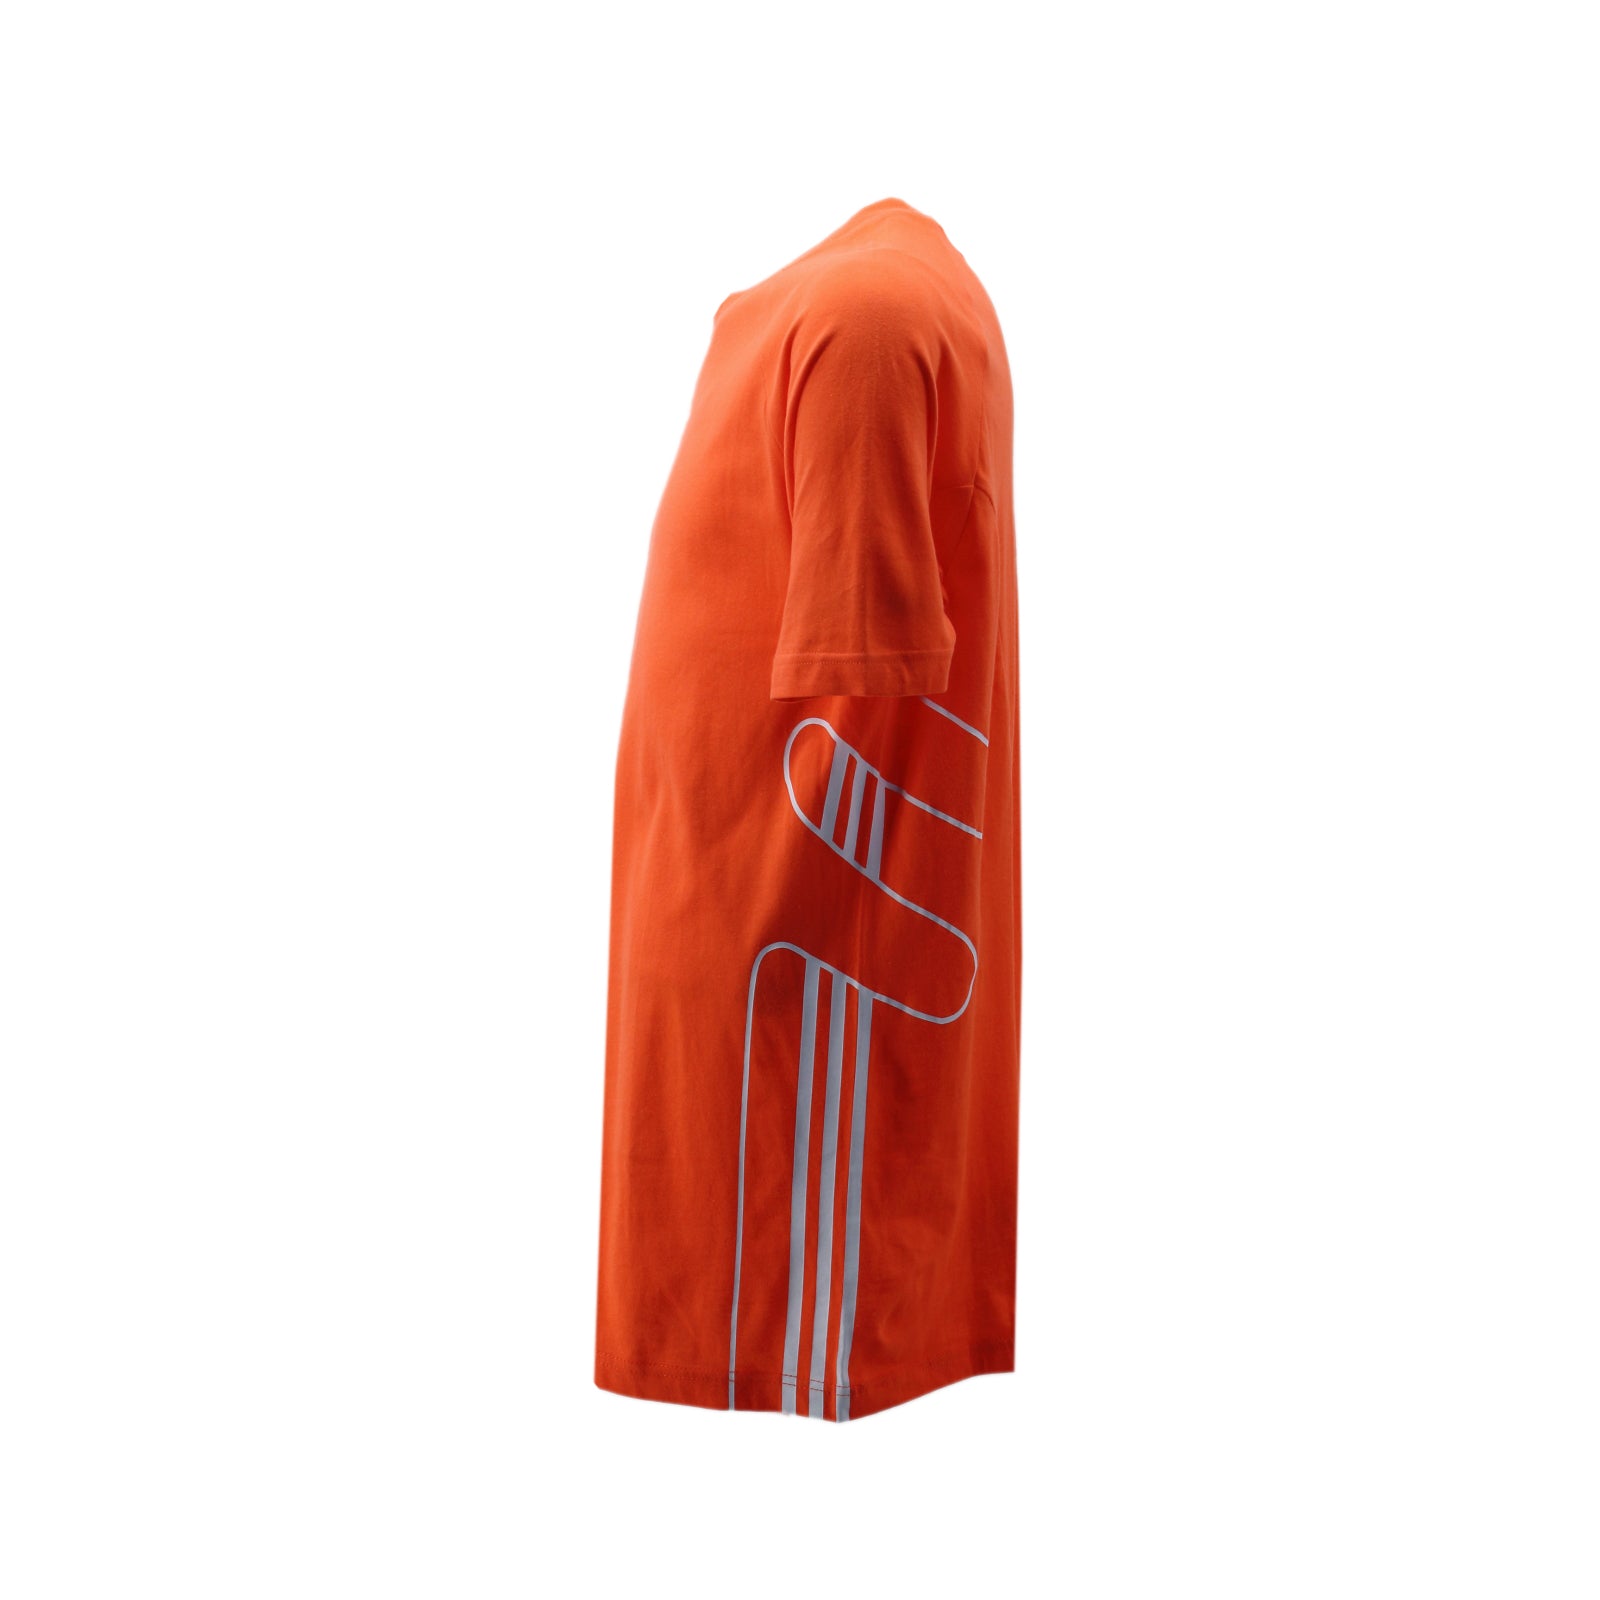 Adidas Originals Flamestrike Trefoil Tee T-Shirt Herren Baumwolle orange DU8108 - Brand Dealers Arena e.K. - BDA24